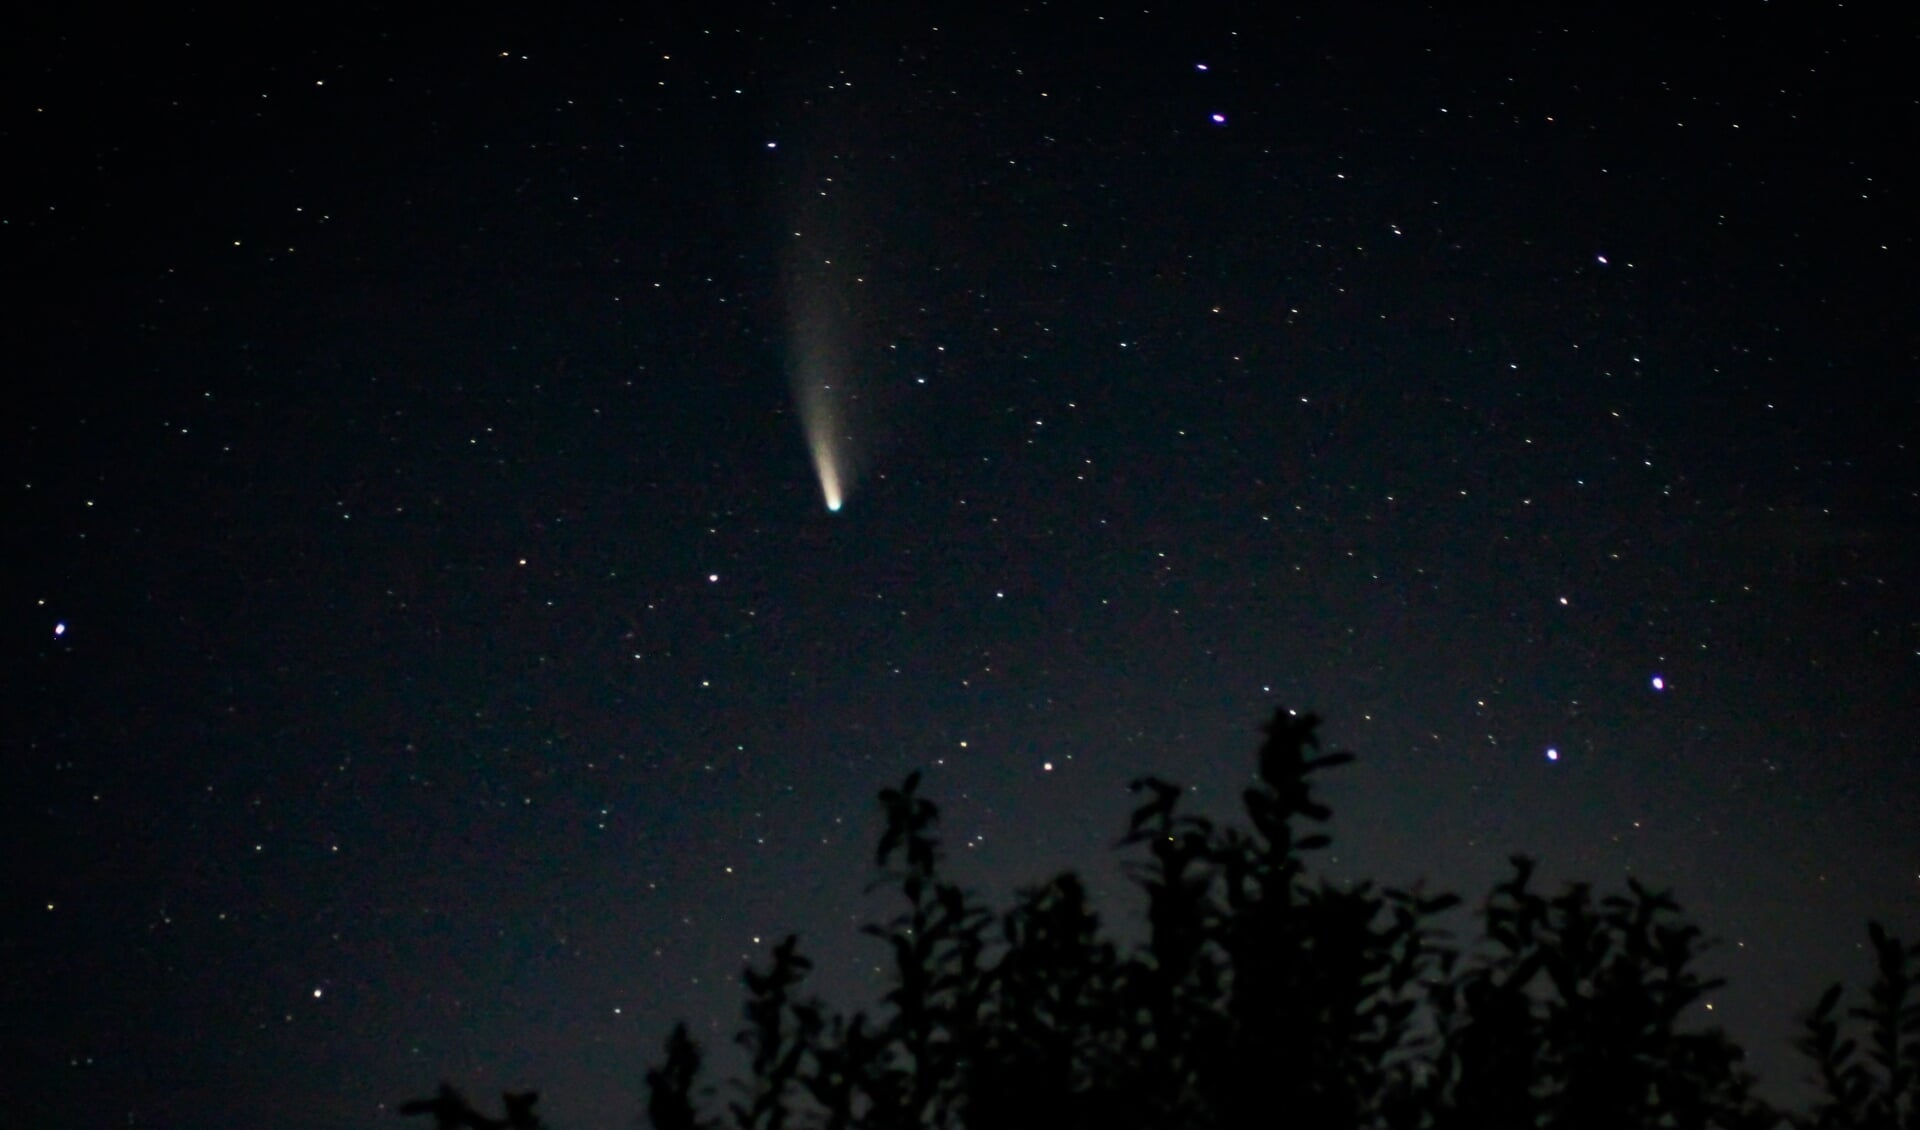 De komeet is te zien tussen de sterren.